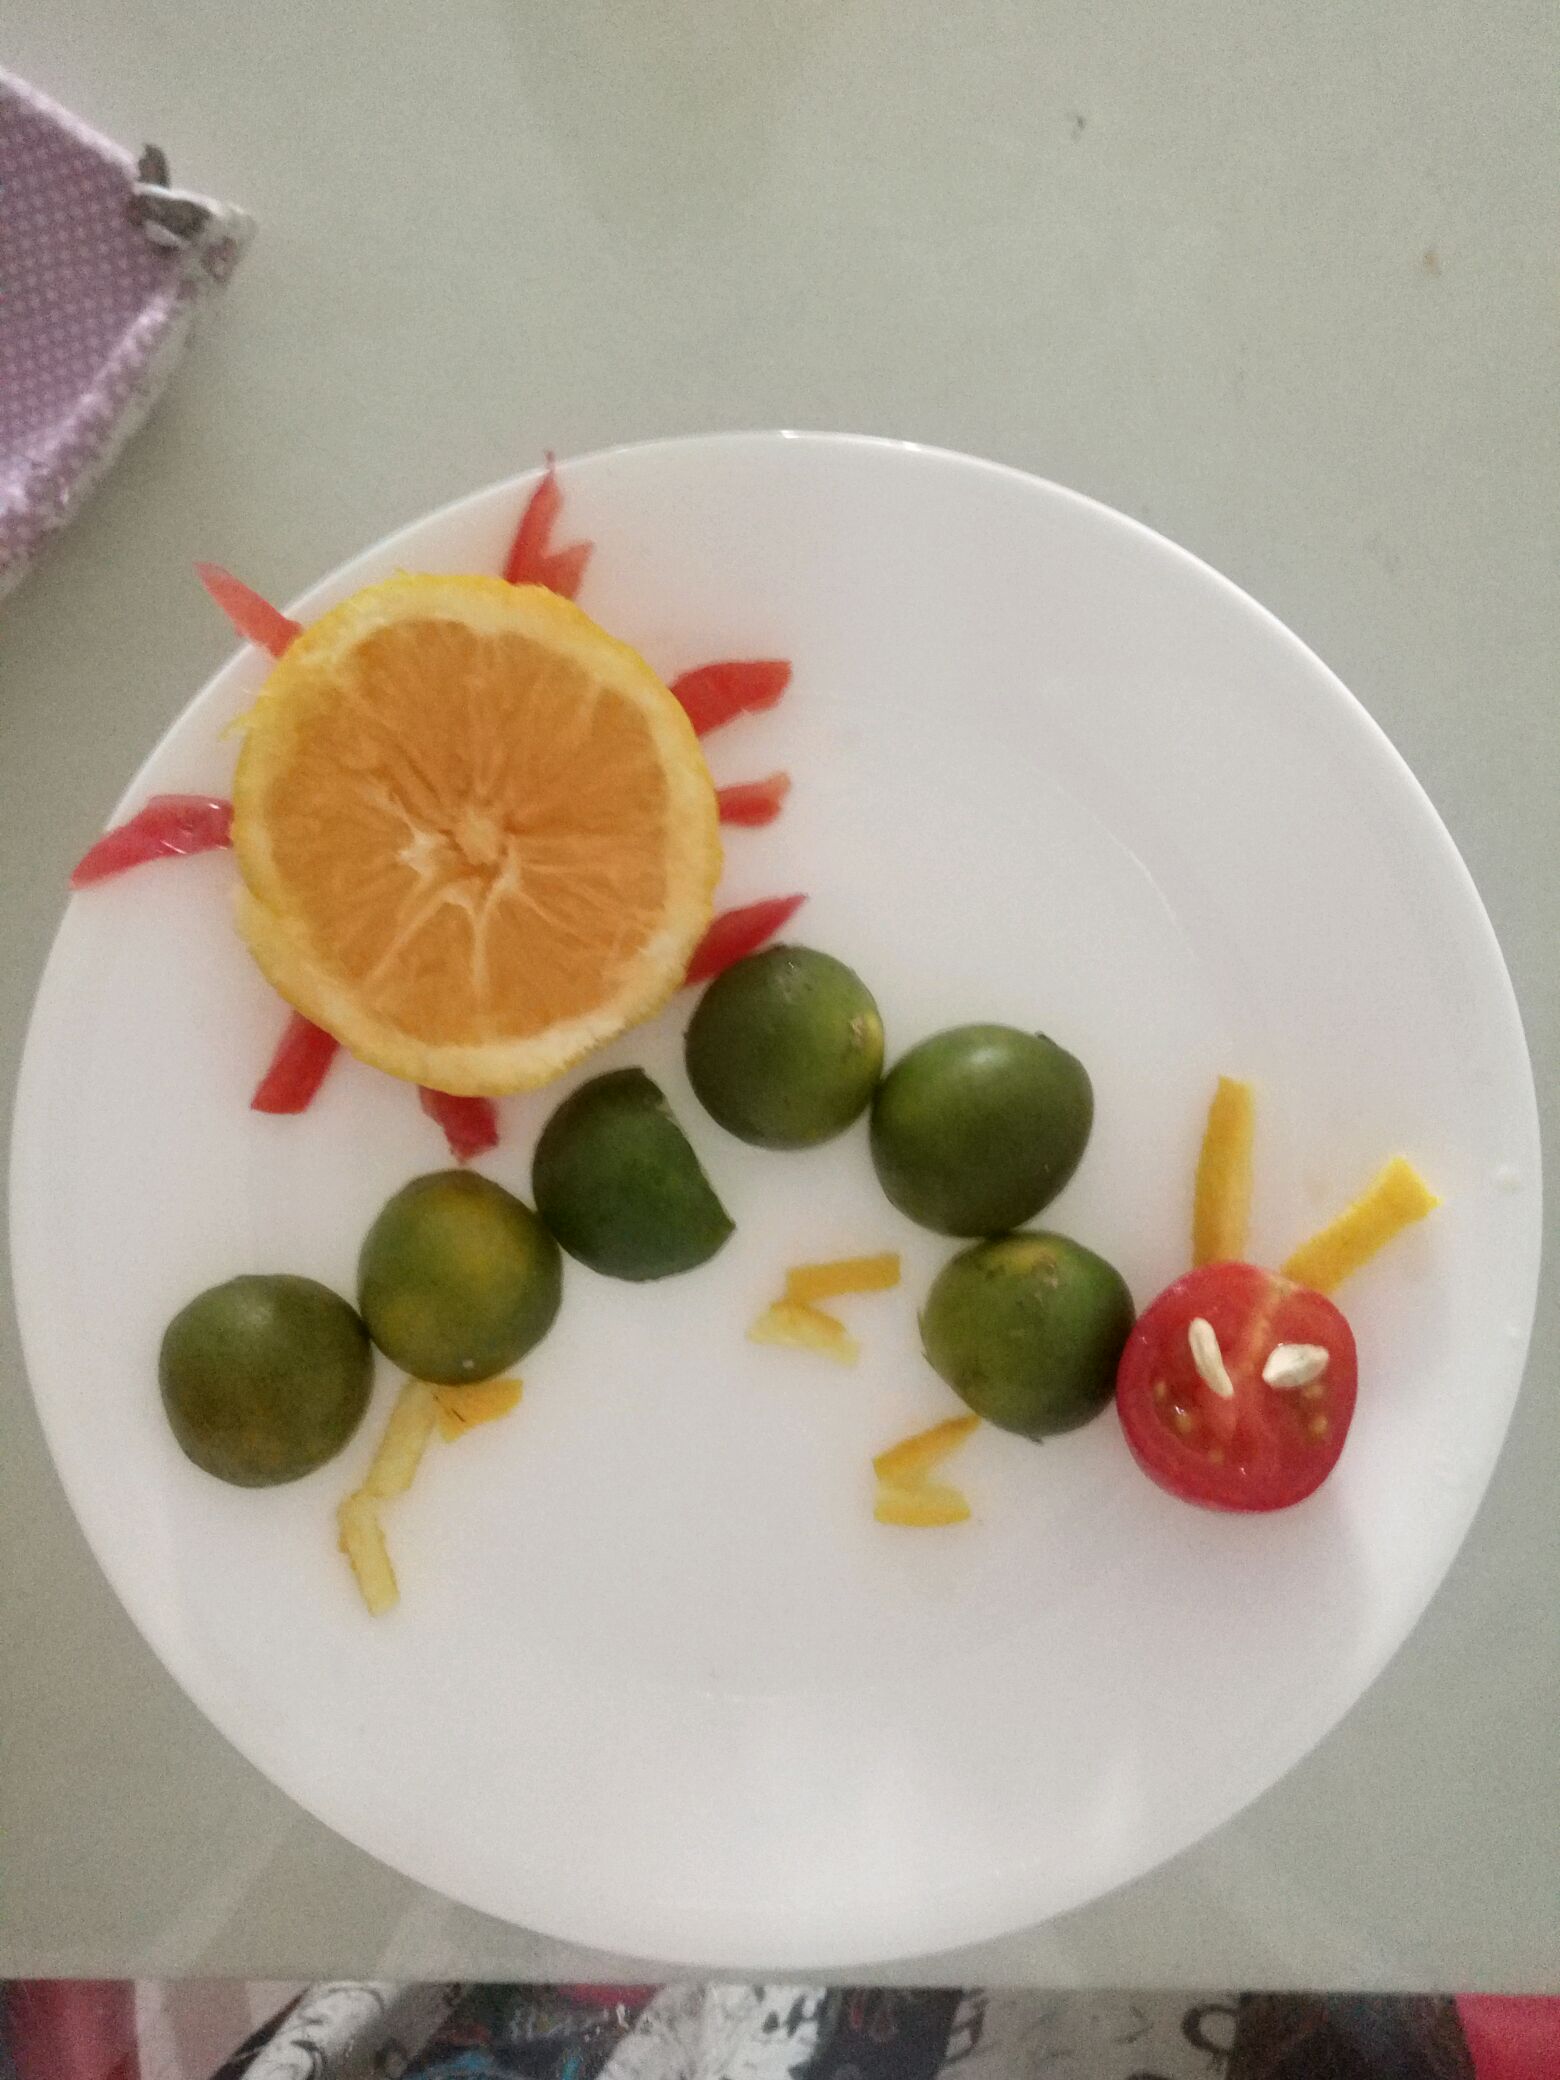 水果拼盘怎么做_水果拼盘的做法_豆果美食